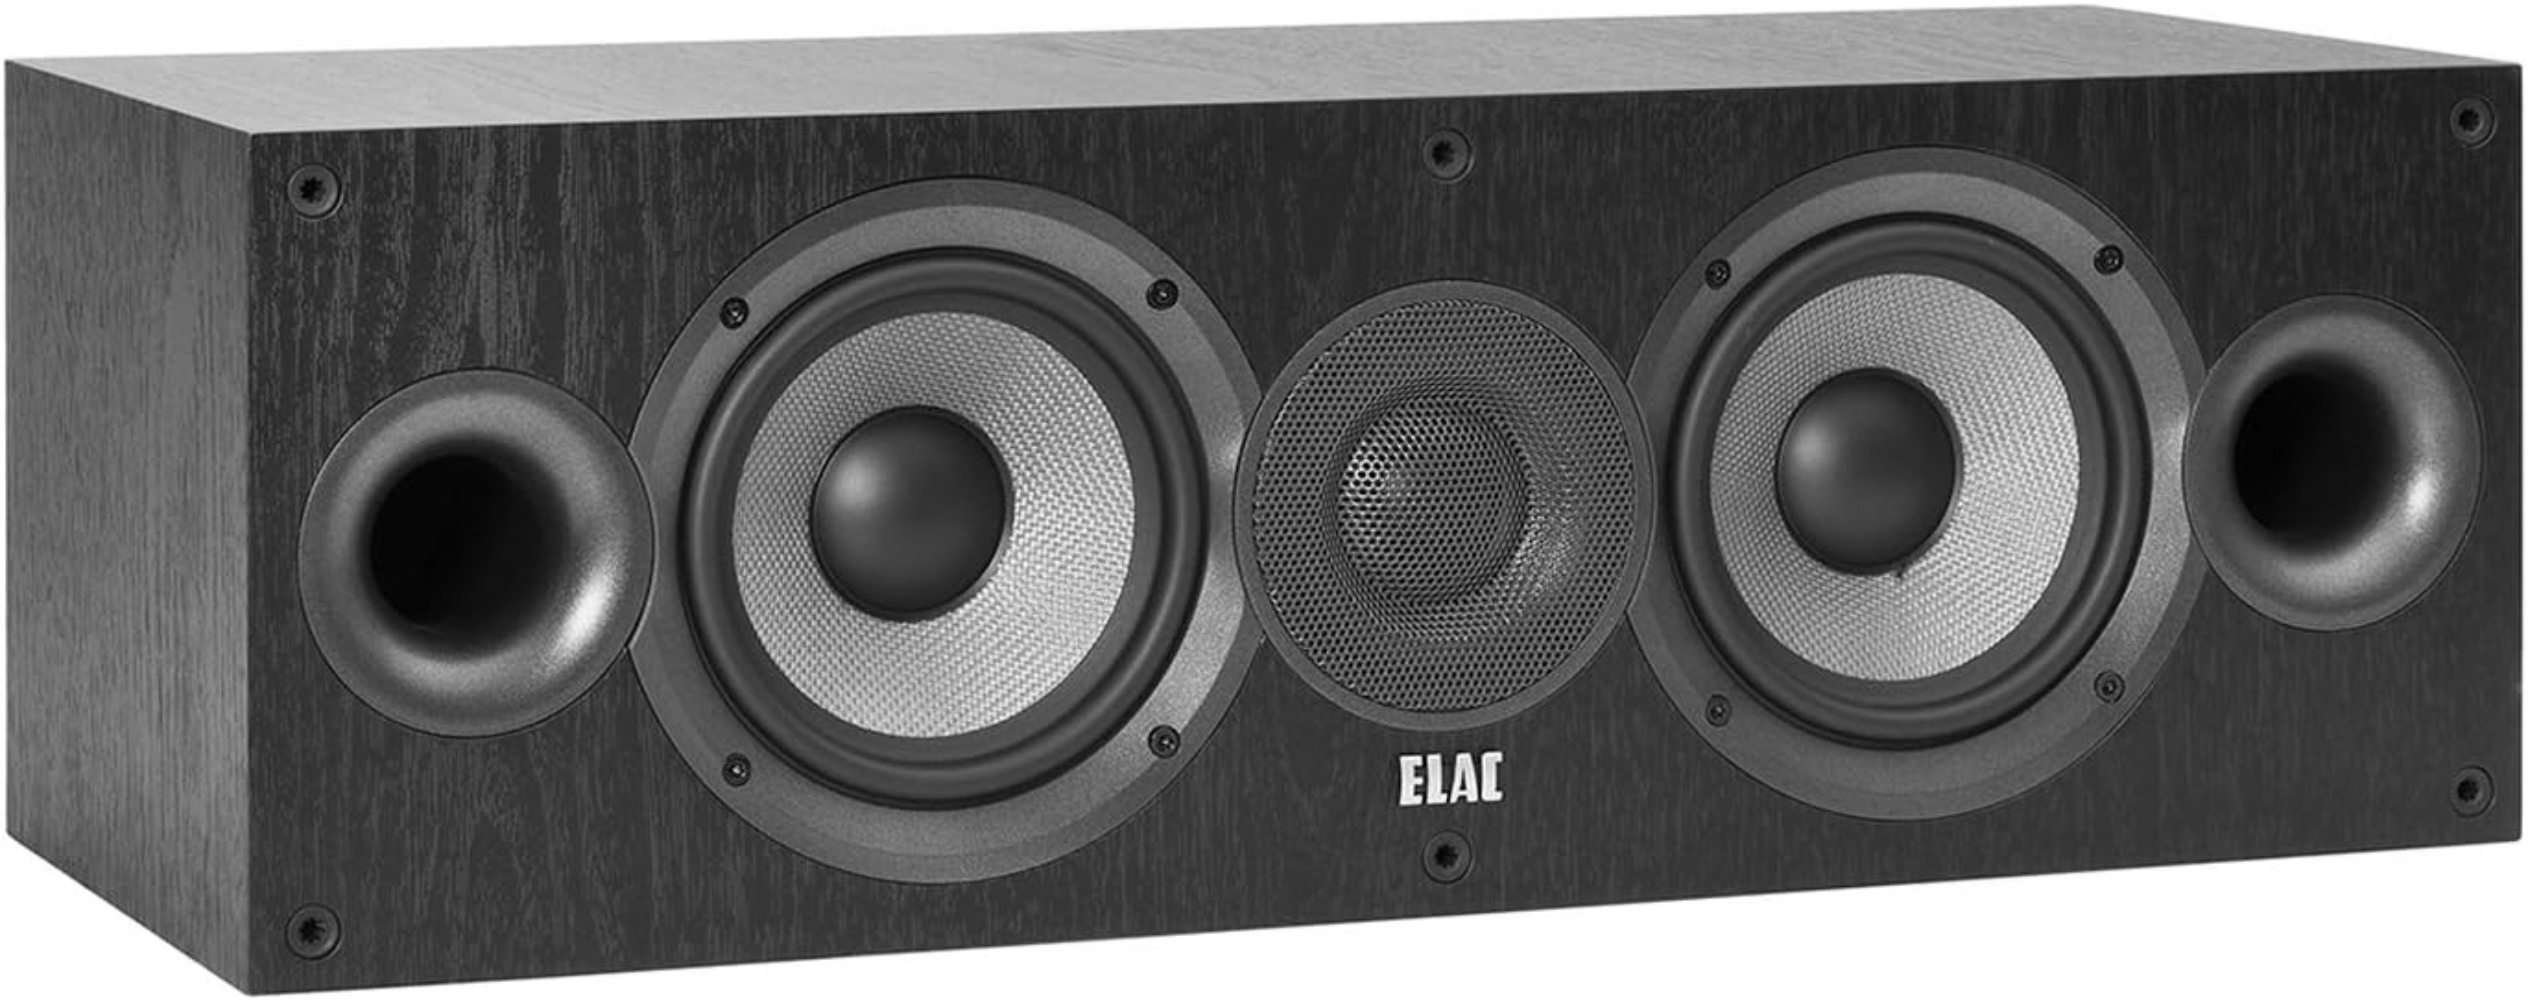 ELAC - Debut 2.0 5.25" Center Speaker with MDF Cabinets, Black  